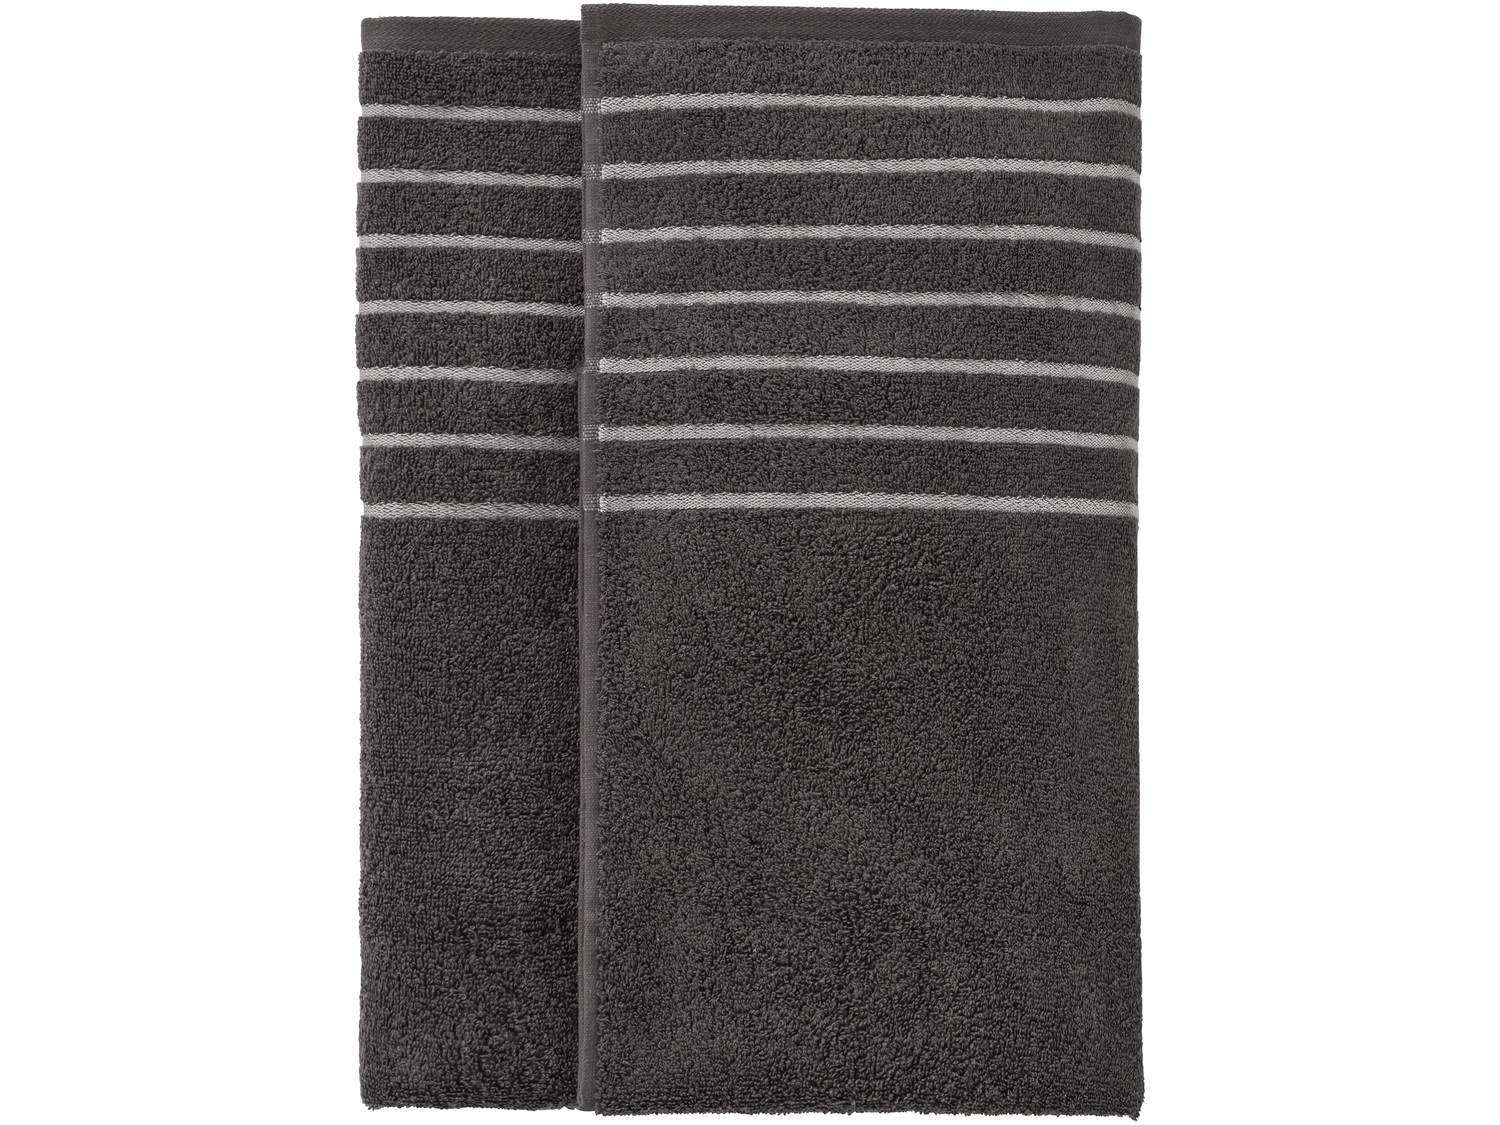 Ręcznik frotté 100 x 150 cm Miomare, cena 34,99 PLN 
- łagodne otulenie
- 400 ...